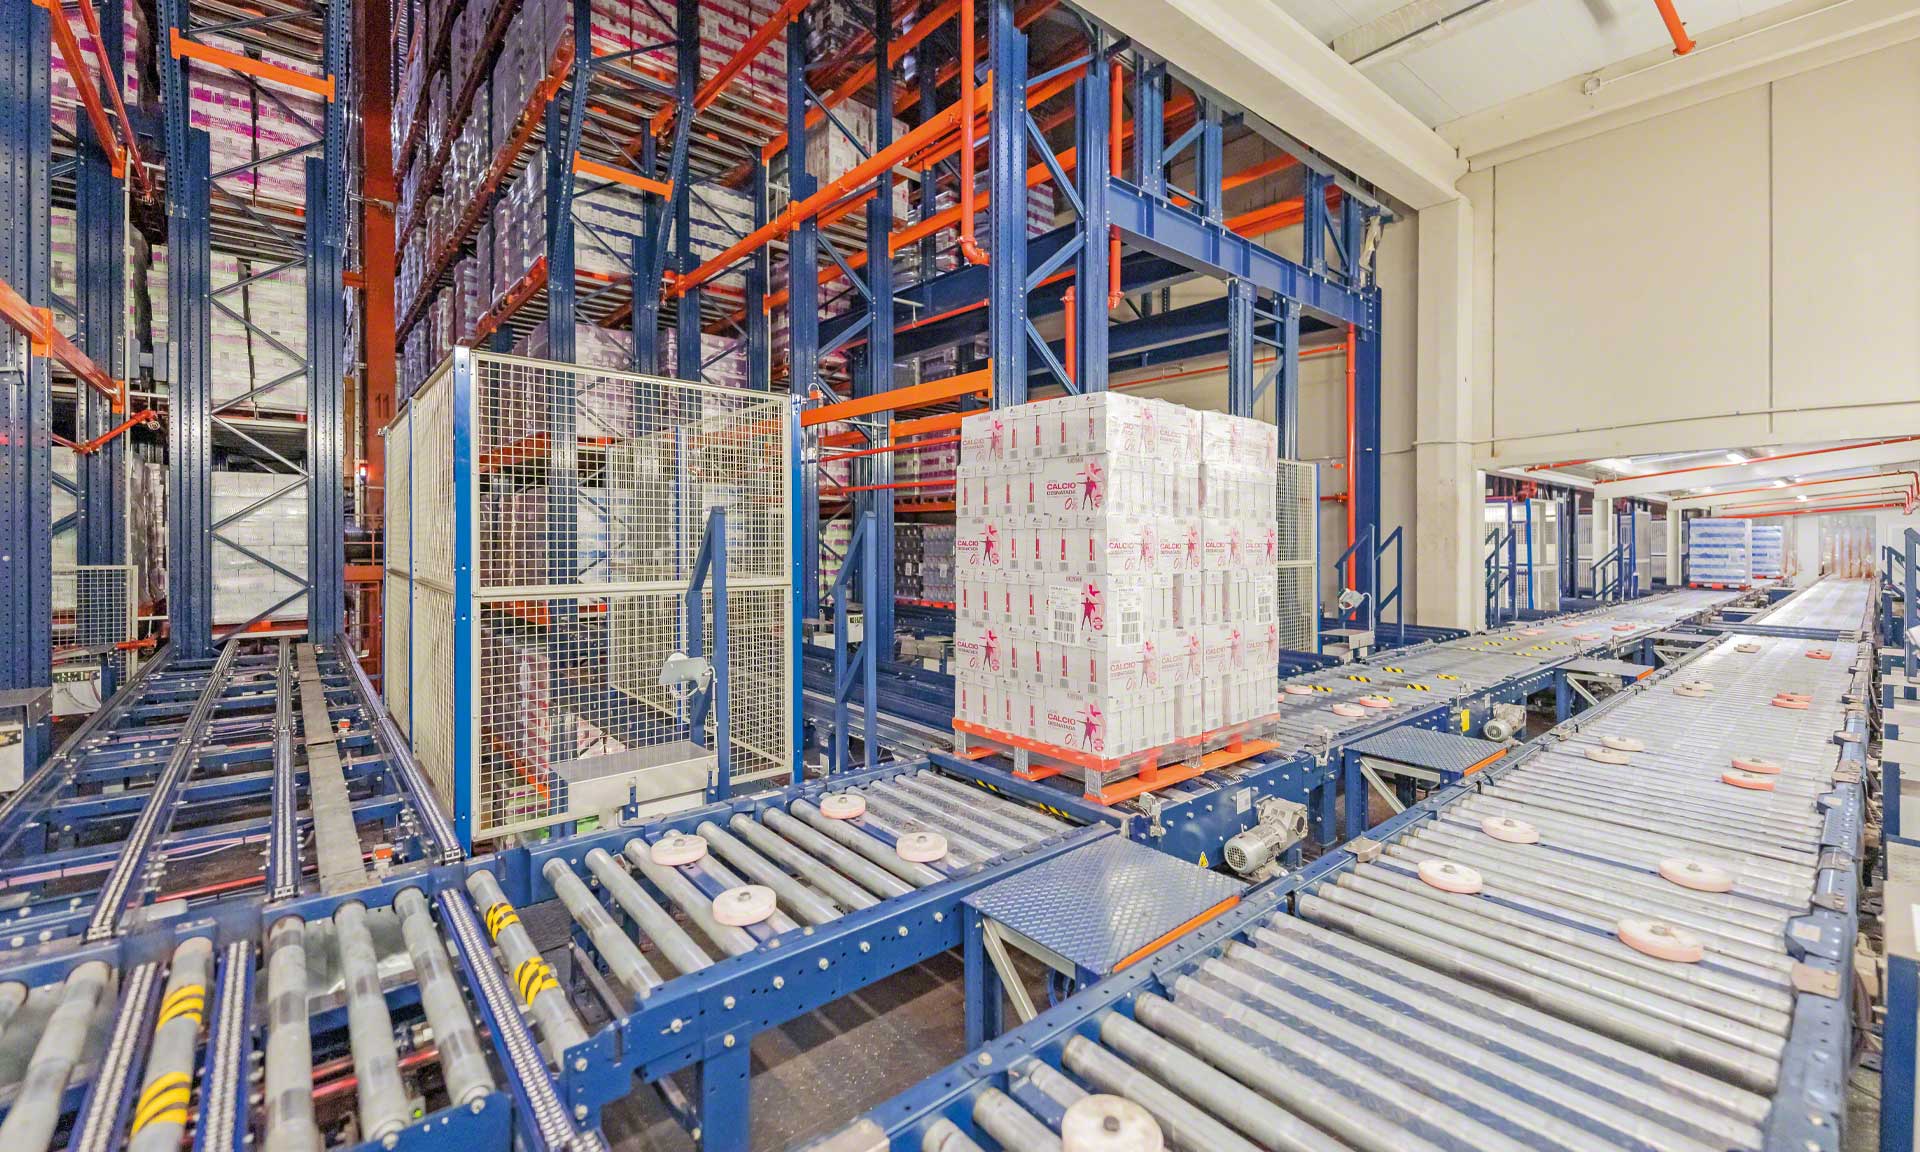 Esnelat automatiza su logística con dos almacenes automatizados para productos lácteos